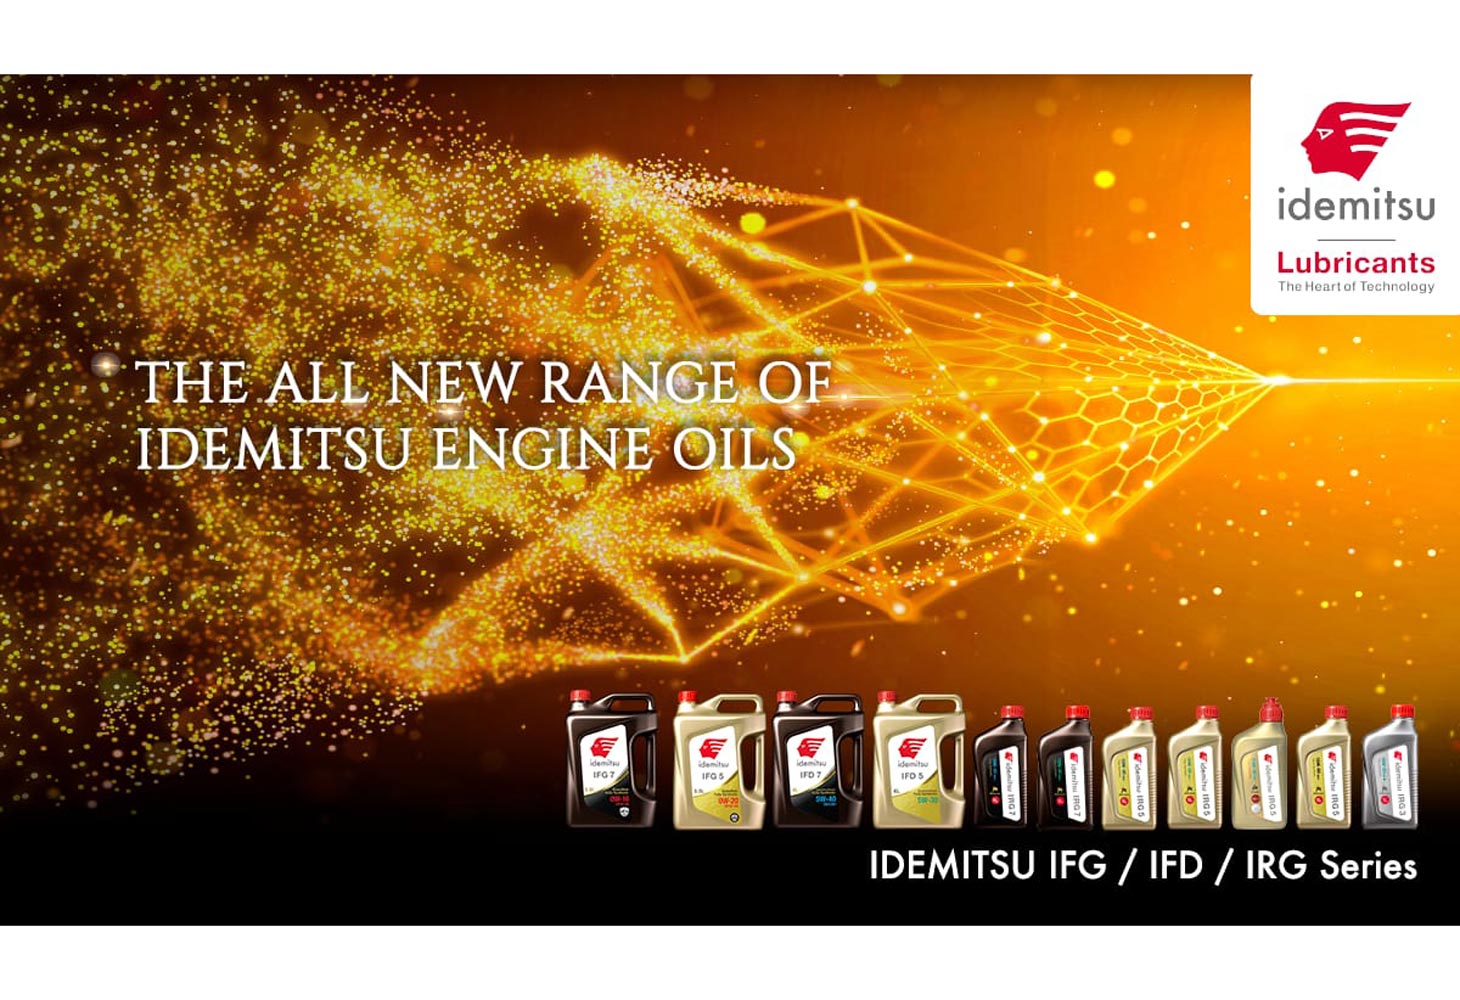 Idemitsu introduces new series of premium engine oils in India